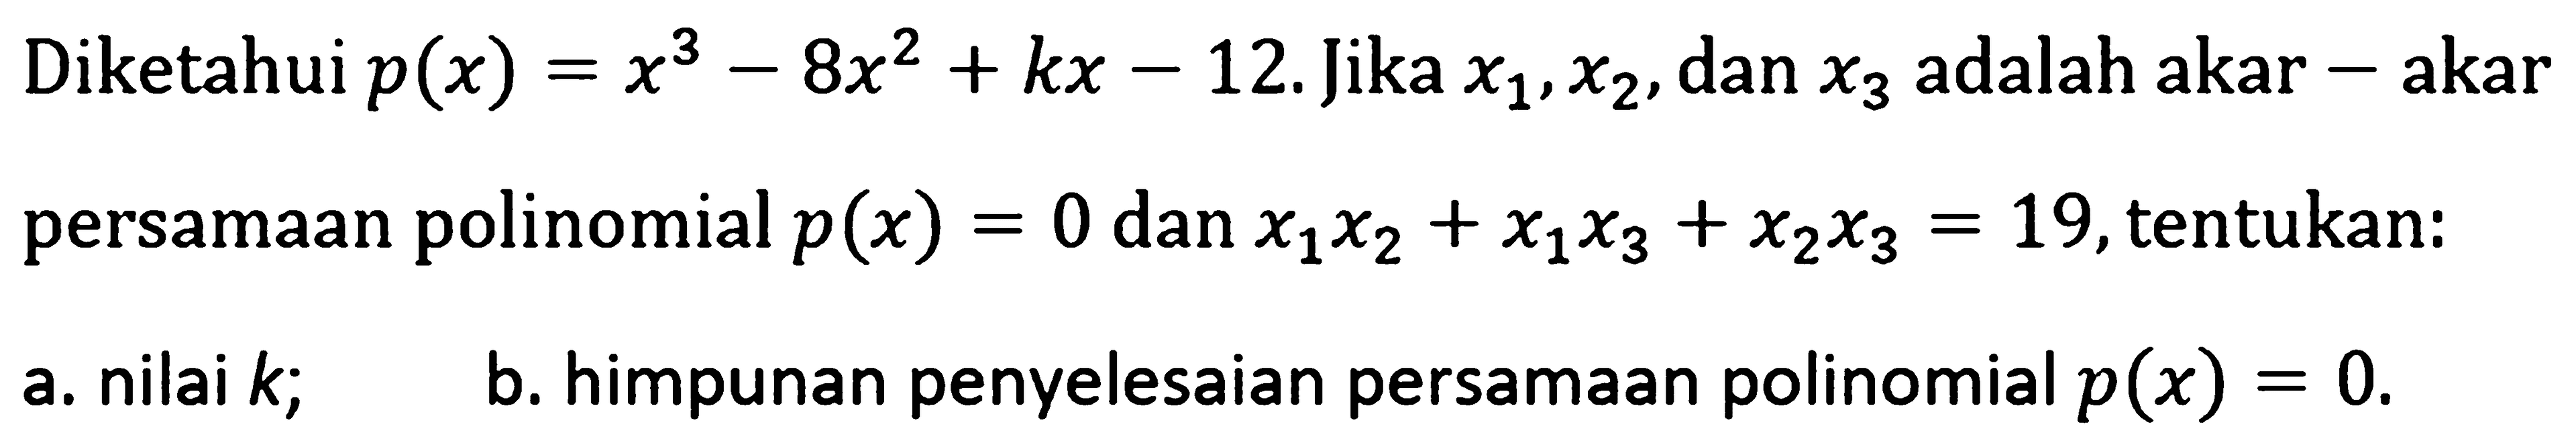 Diketahui p(x)=x^3-8x^2+kx-12. Jika x1,x2, dan x3 adalah akar-akar persamaan polinomial p(x)=0 dan x1x2+x1x3+x2x3=19, tentukan: a. nilai k; b. himpunan penyelesaian persamaan polinomial p(x)=0.